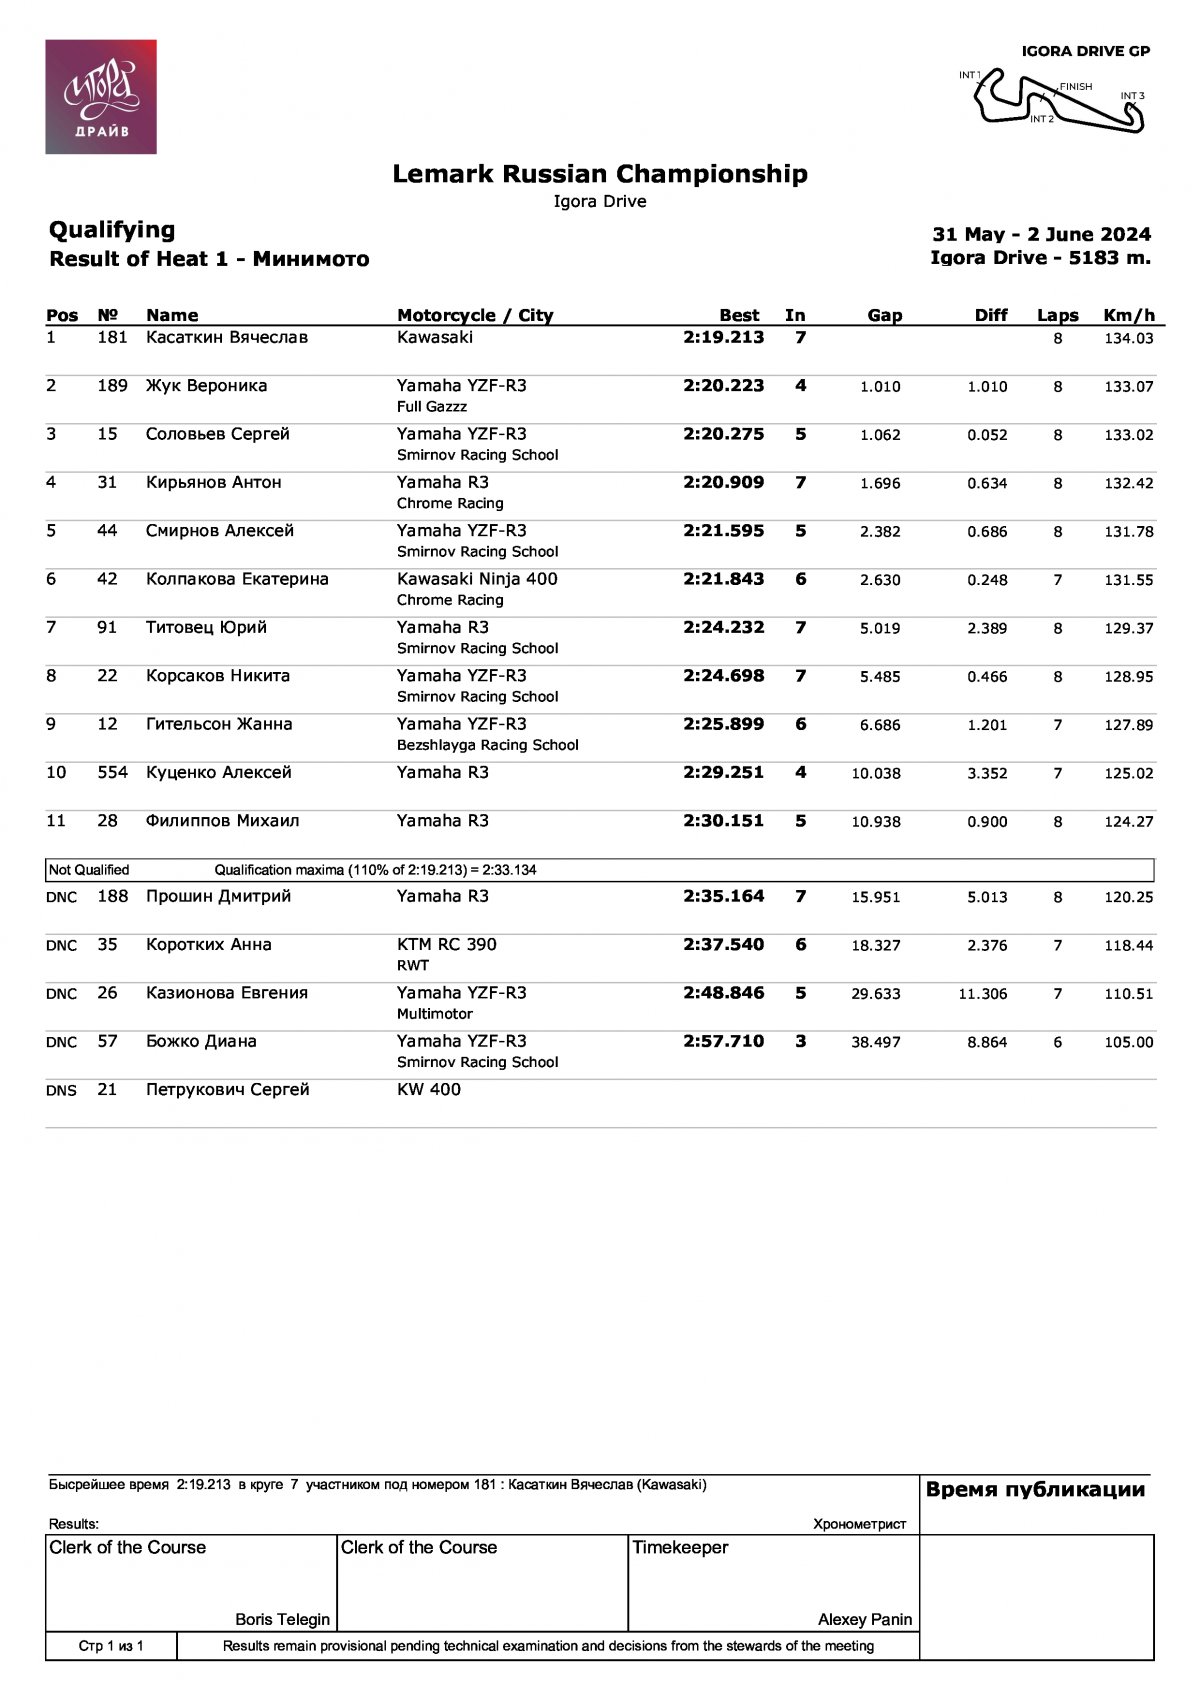 LEMARC Чемпионат России по кольцевым гонкам: Результаты квалификации в классе «Минимото» (Суперспорт-300)